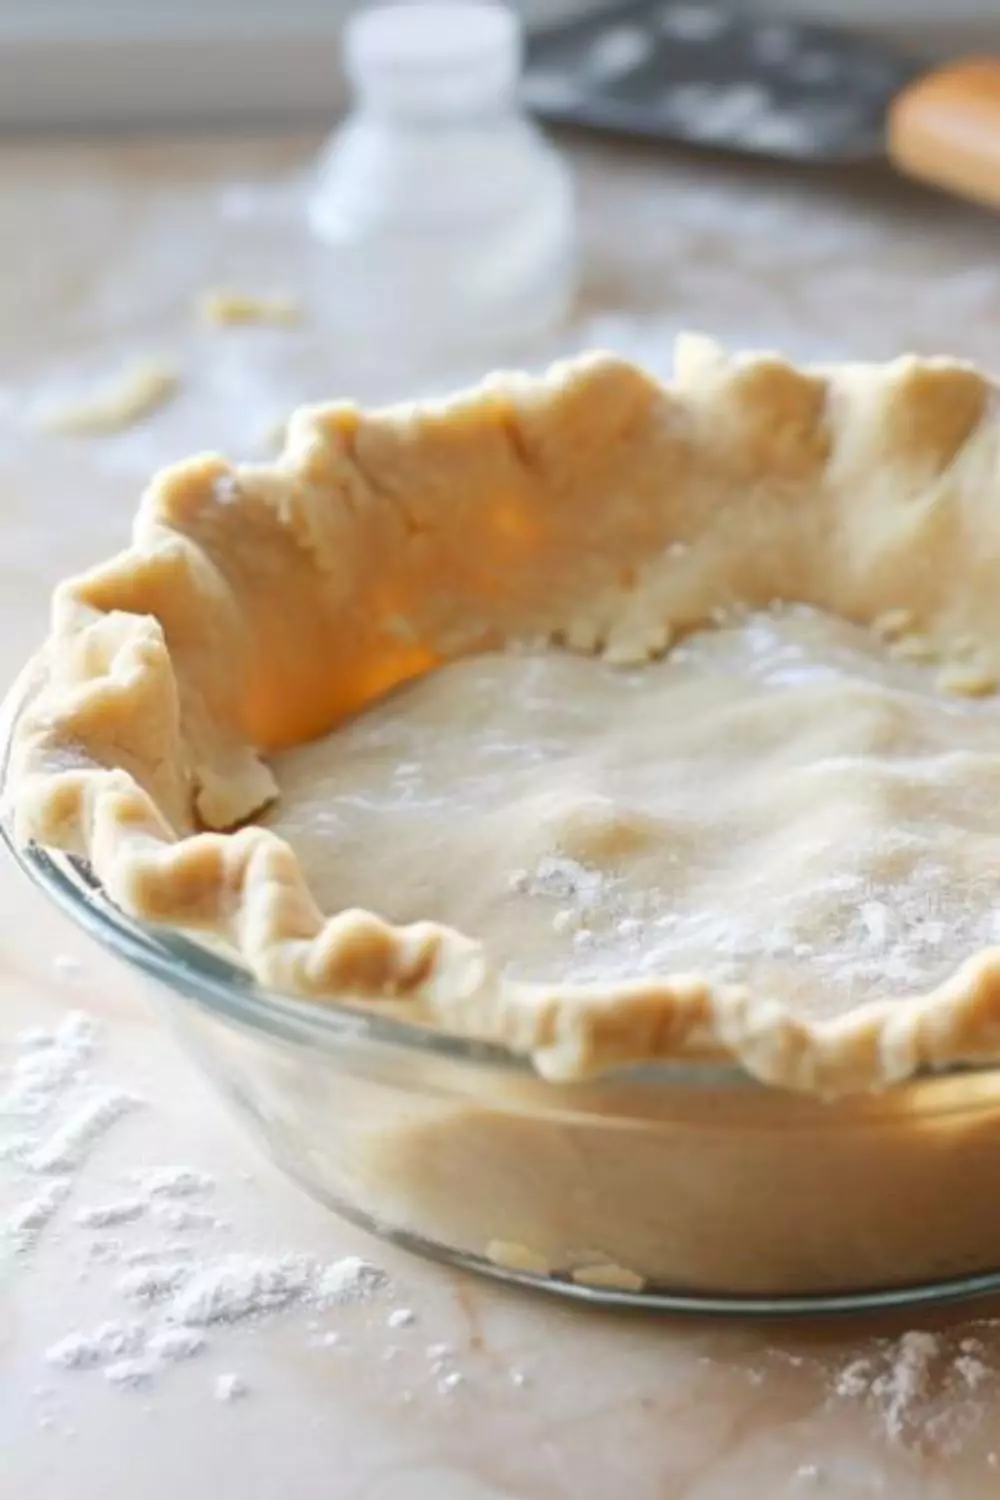 Tupperware Pie Crust Recipe